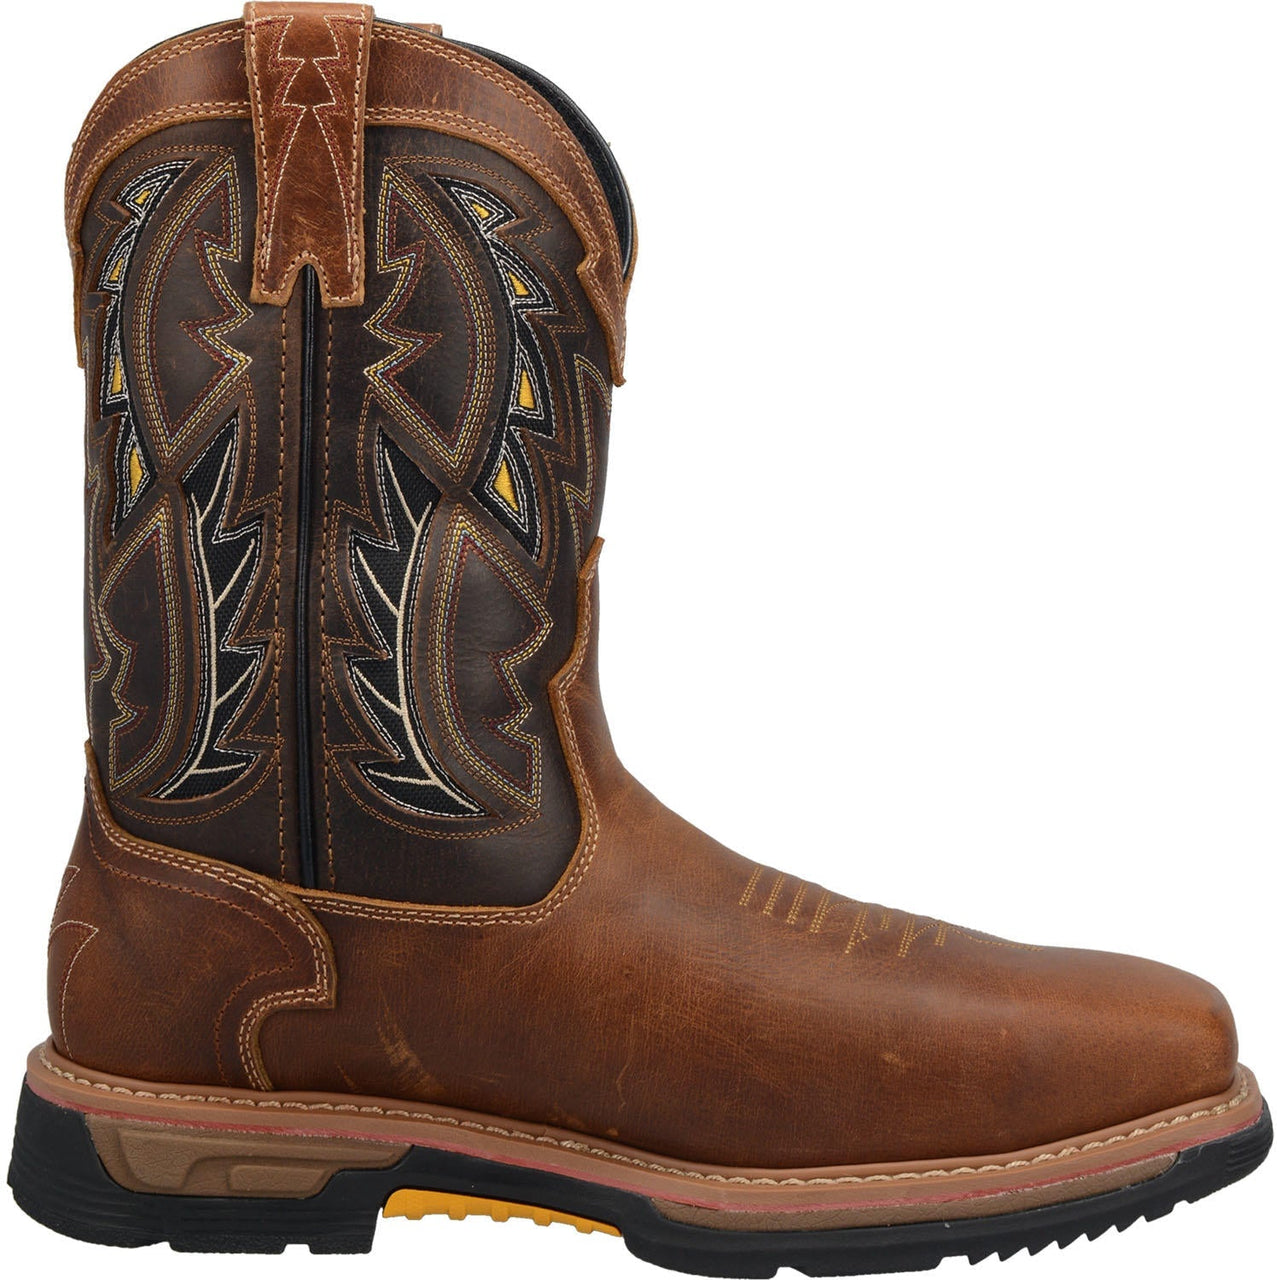 Men's Dan Post Warrior Waterproof Composite Toe Work Boots Handcrafted Brown - yeehawcowboy